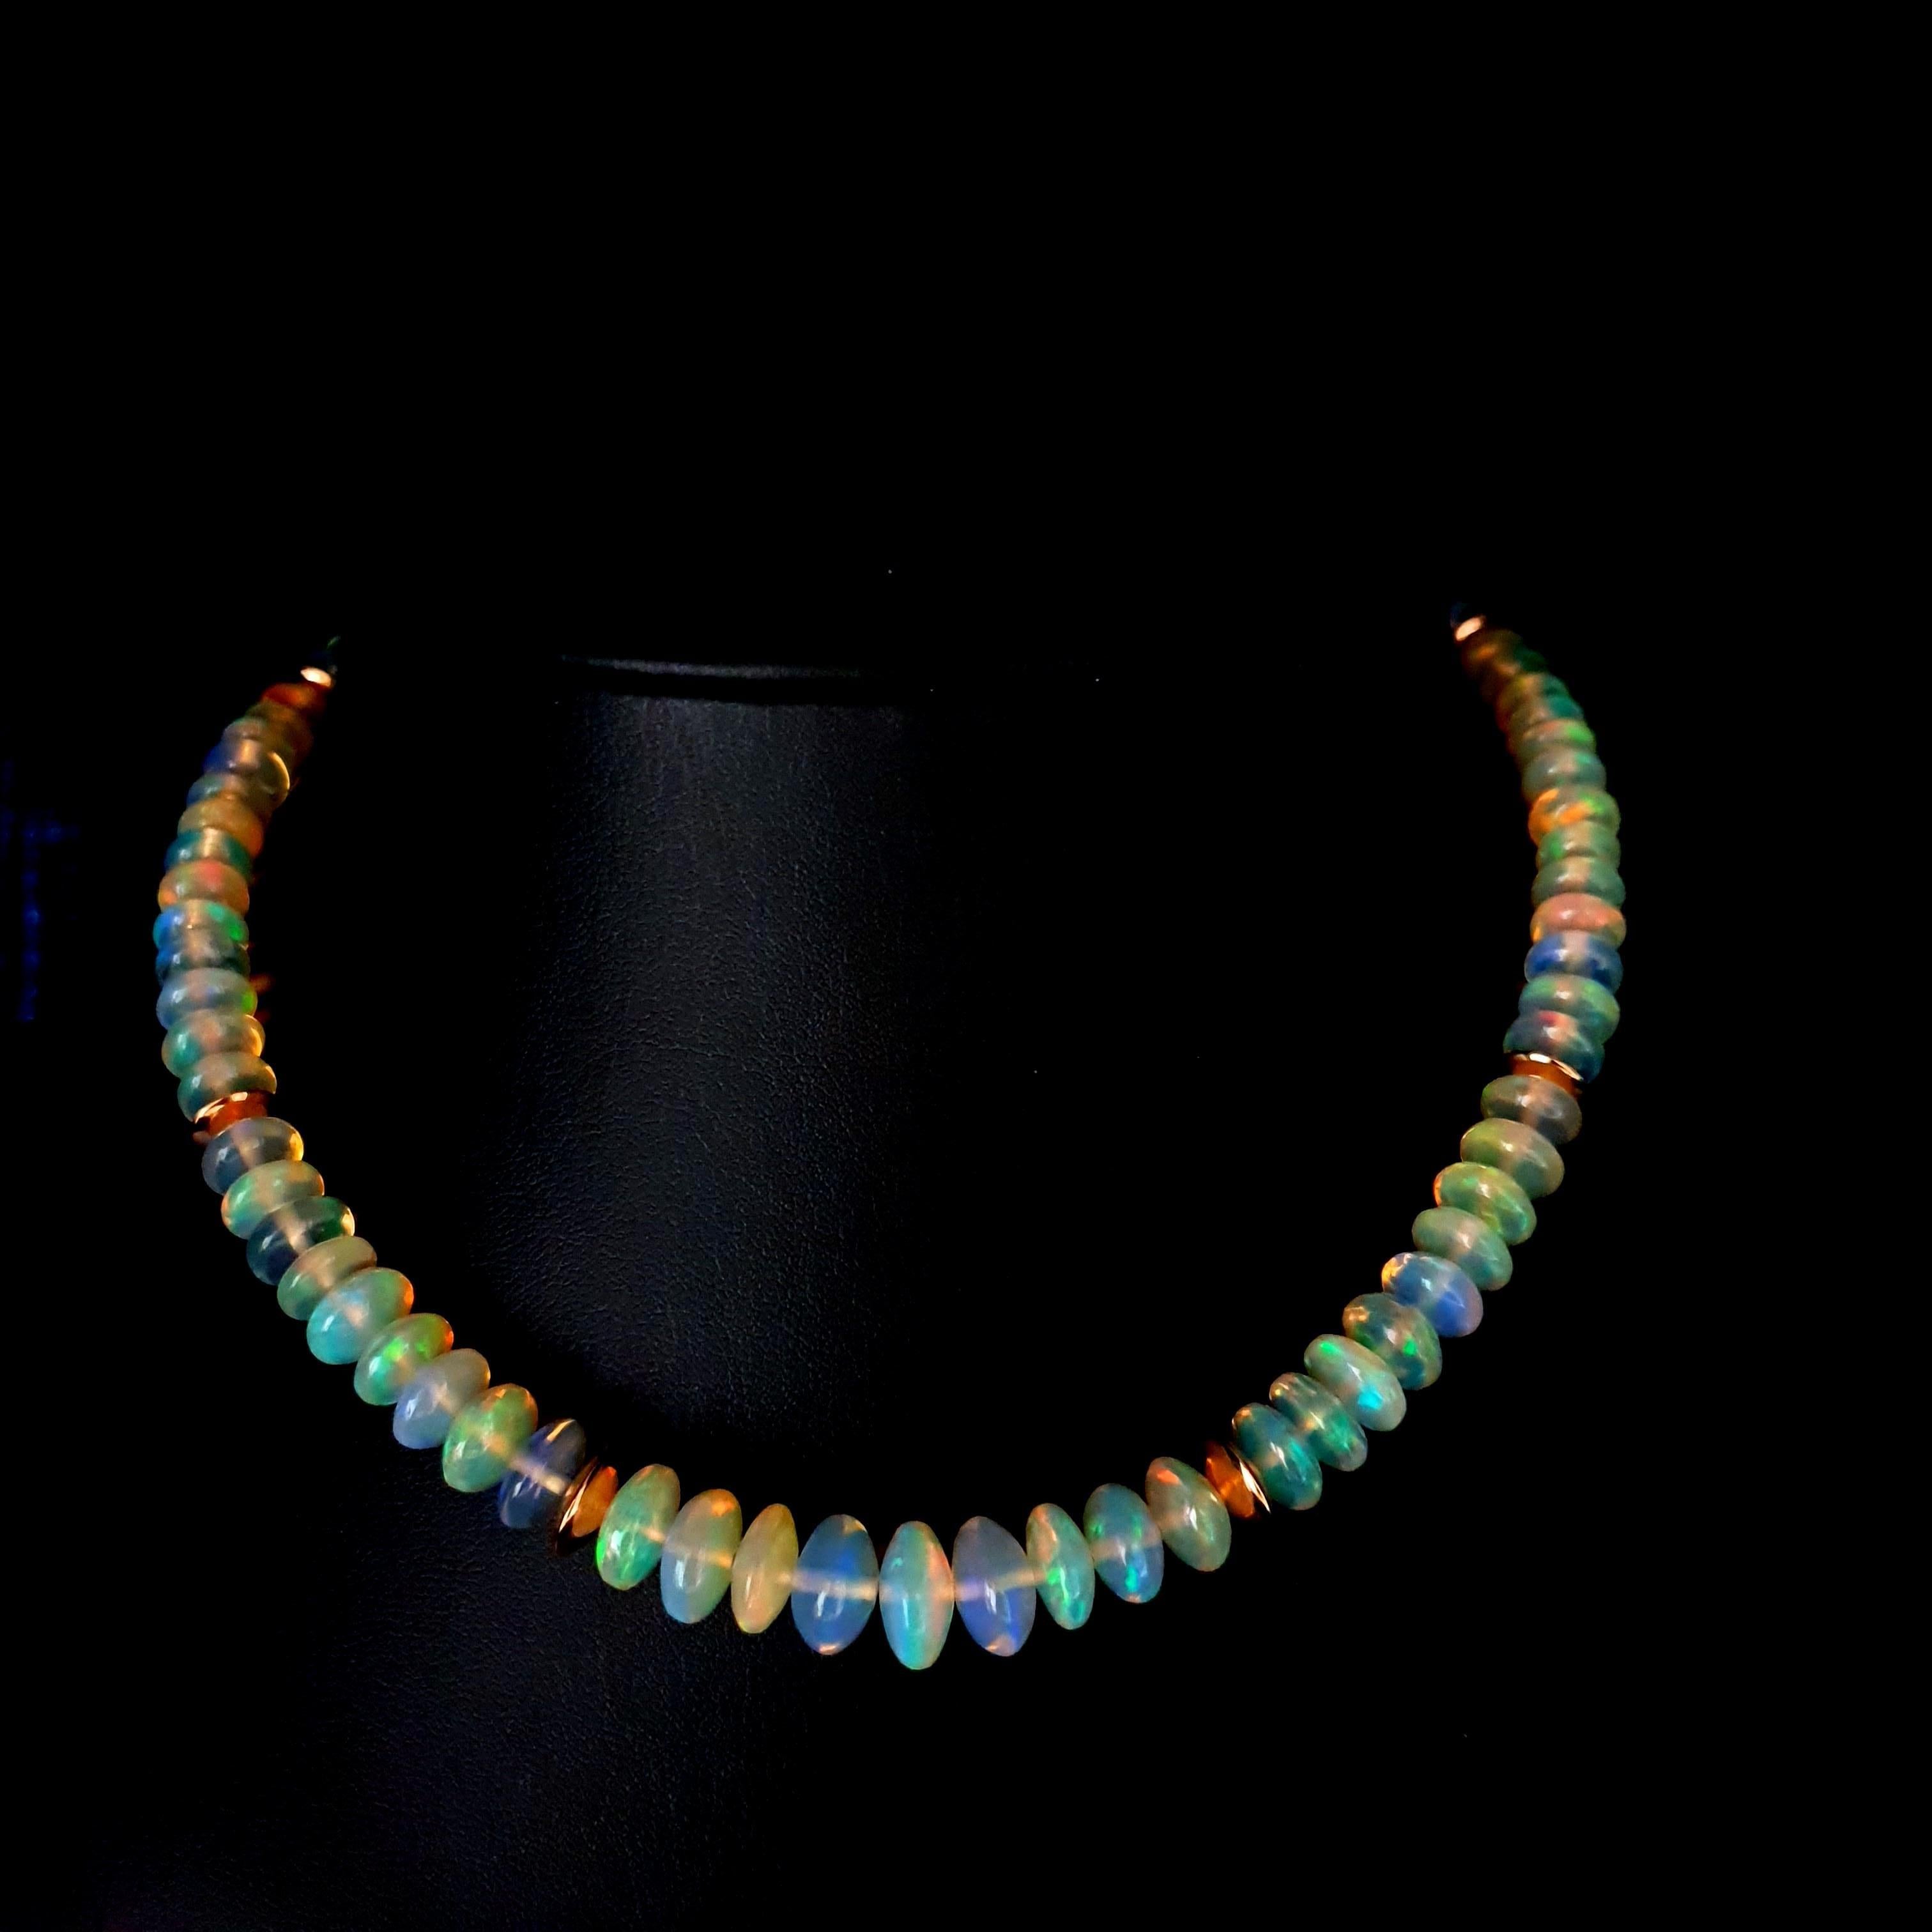 Diese außergewöhnliche, knusprig funkelnde Opal-Halskette mit 18 Karat Roségold ist komplett handgefertigt. Sowohl das Schneiden als auch die Vergoldung sind in deutscher Qualität ausgeführt. Der Schraubverschluss ist einfach zu bedienen und sehr